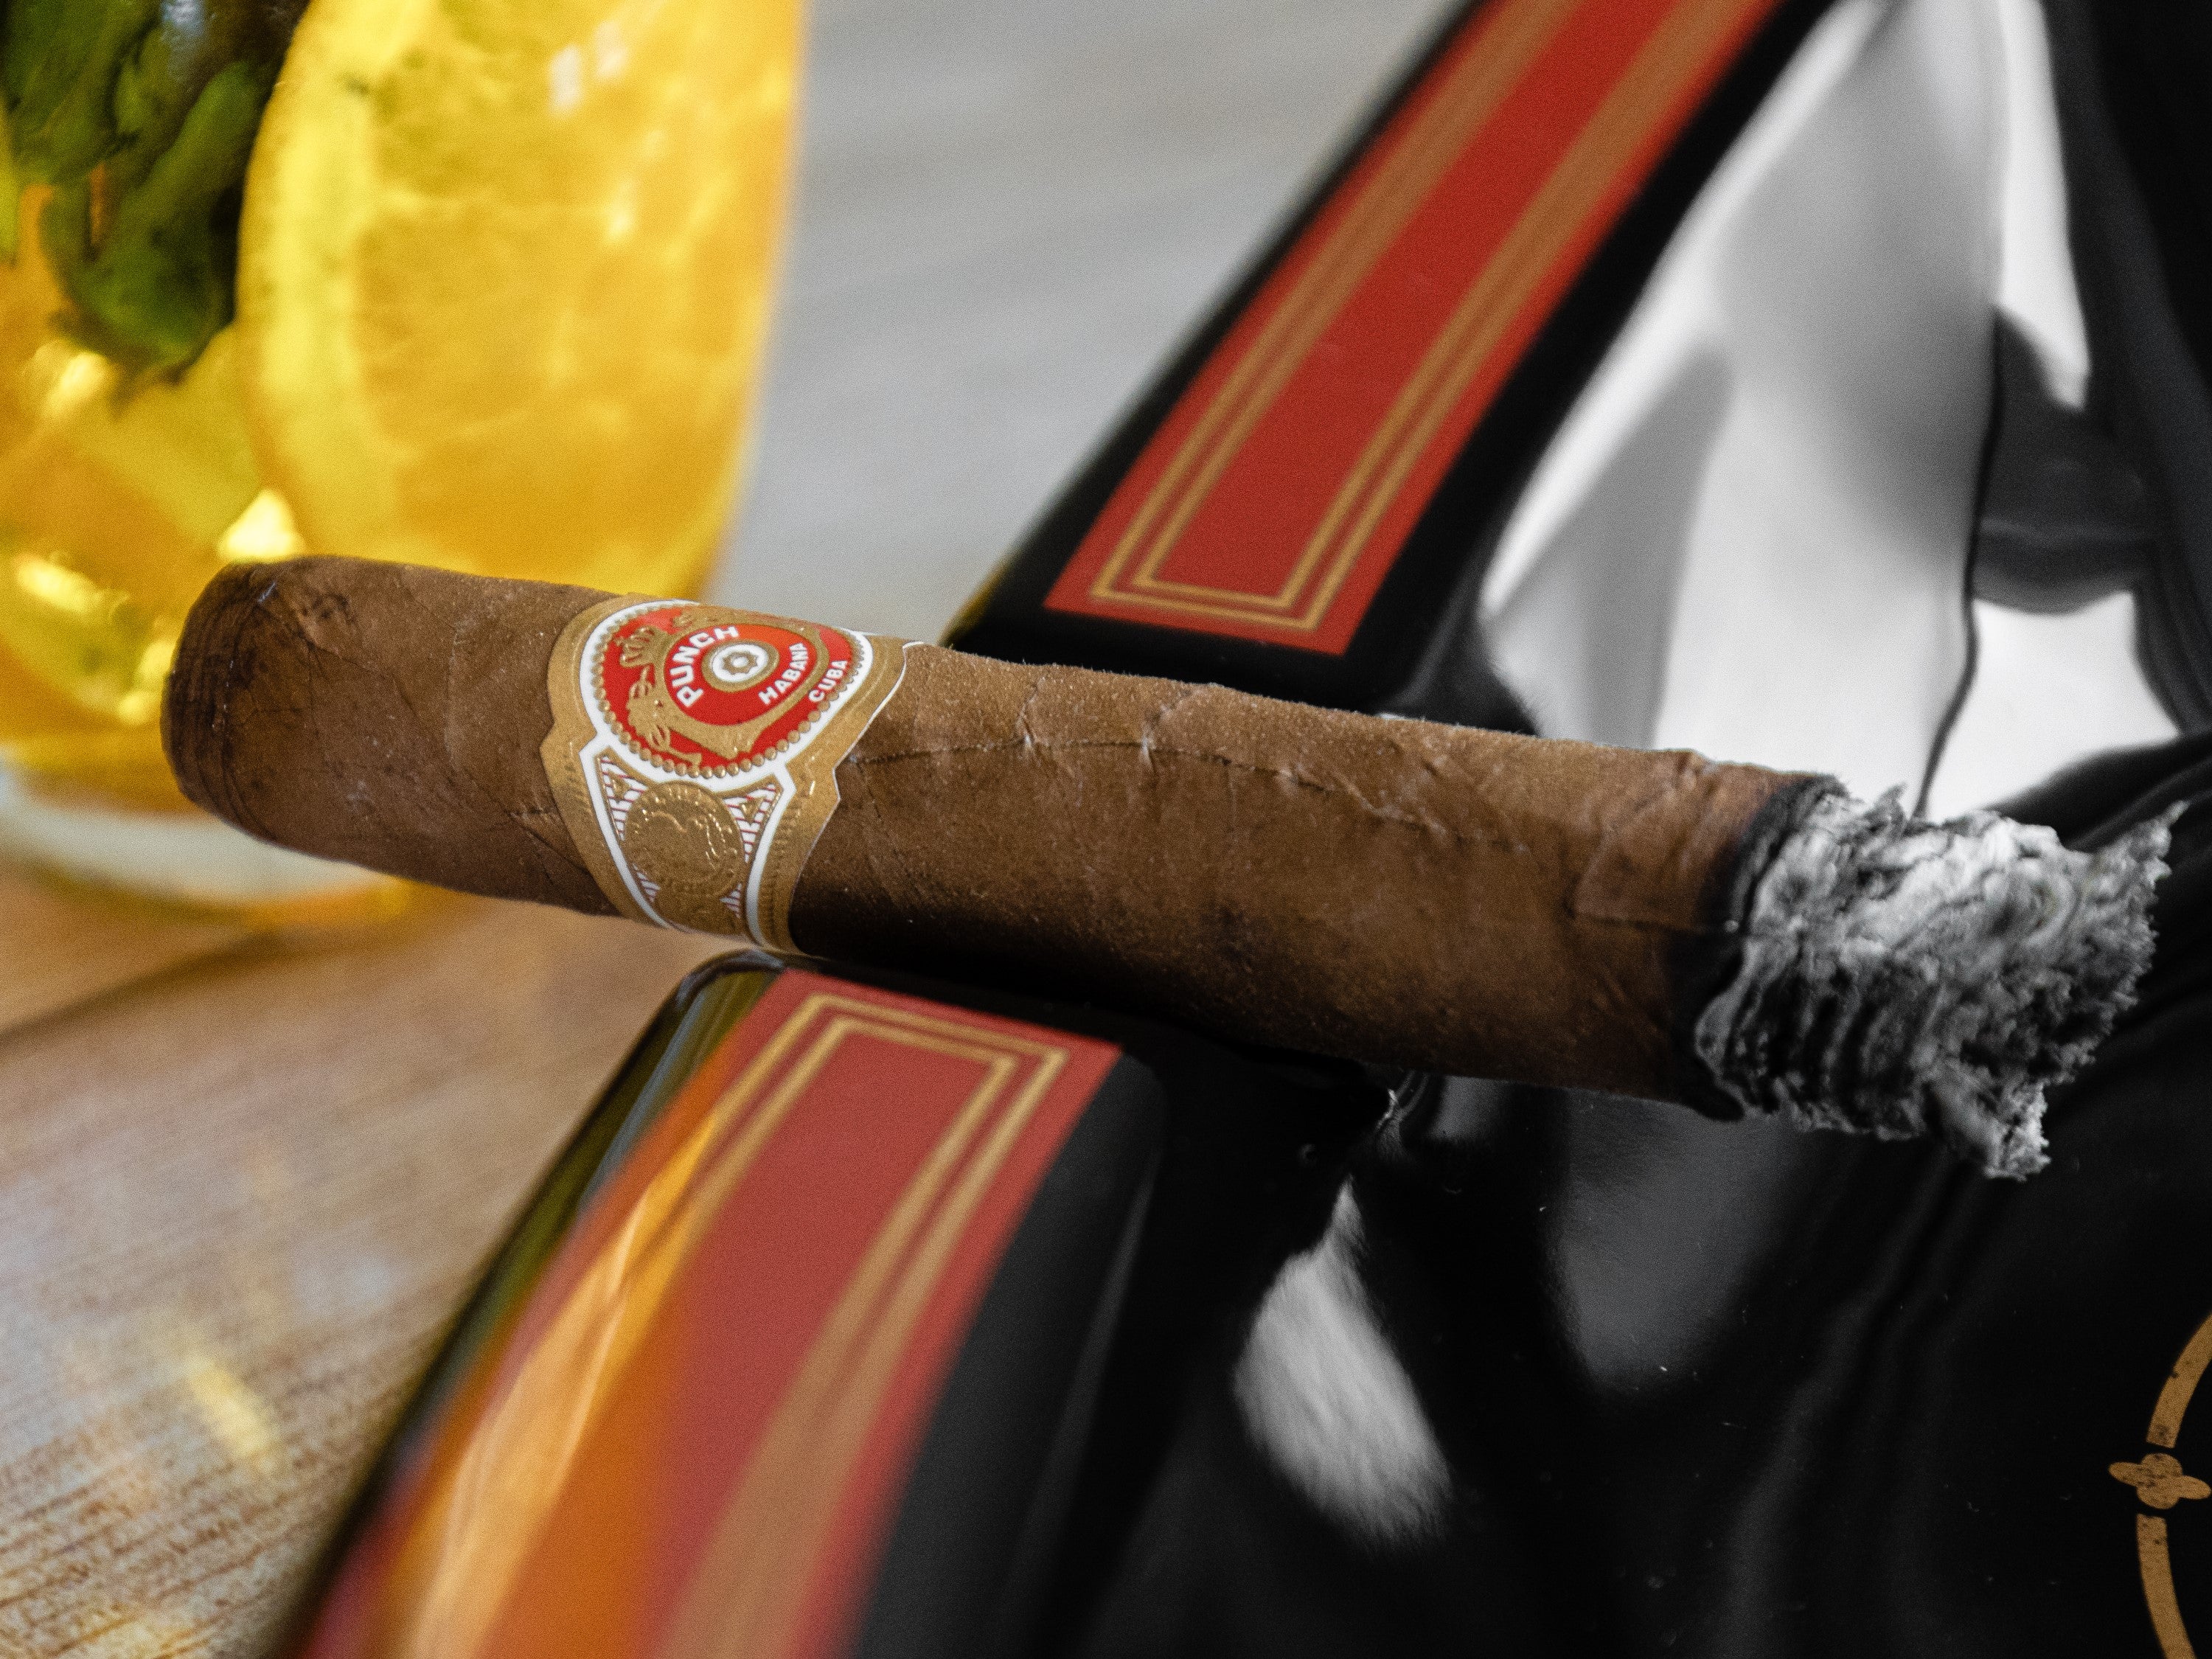 烟灰精美地保存到了加冕礼的古巴雪茄